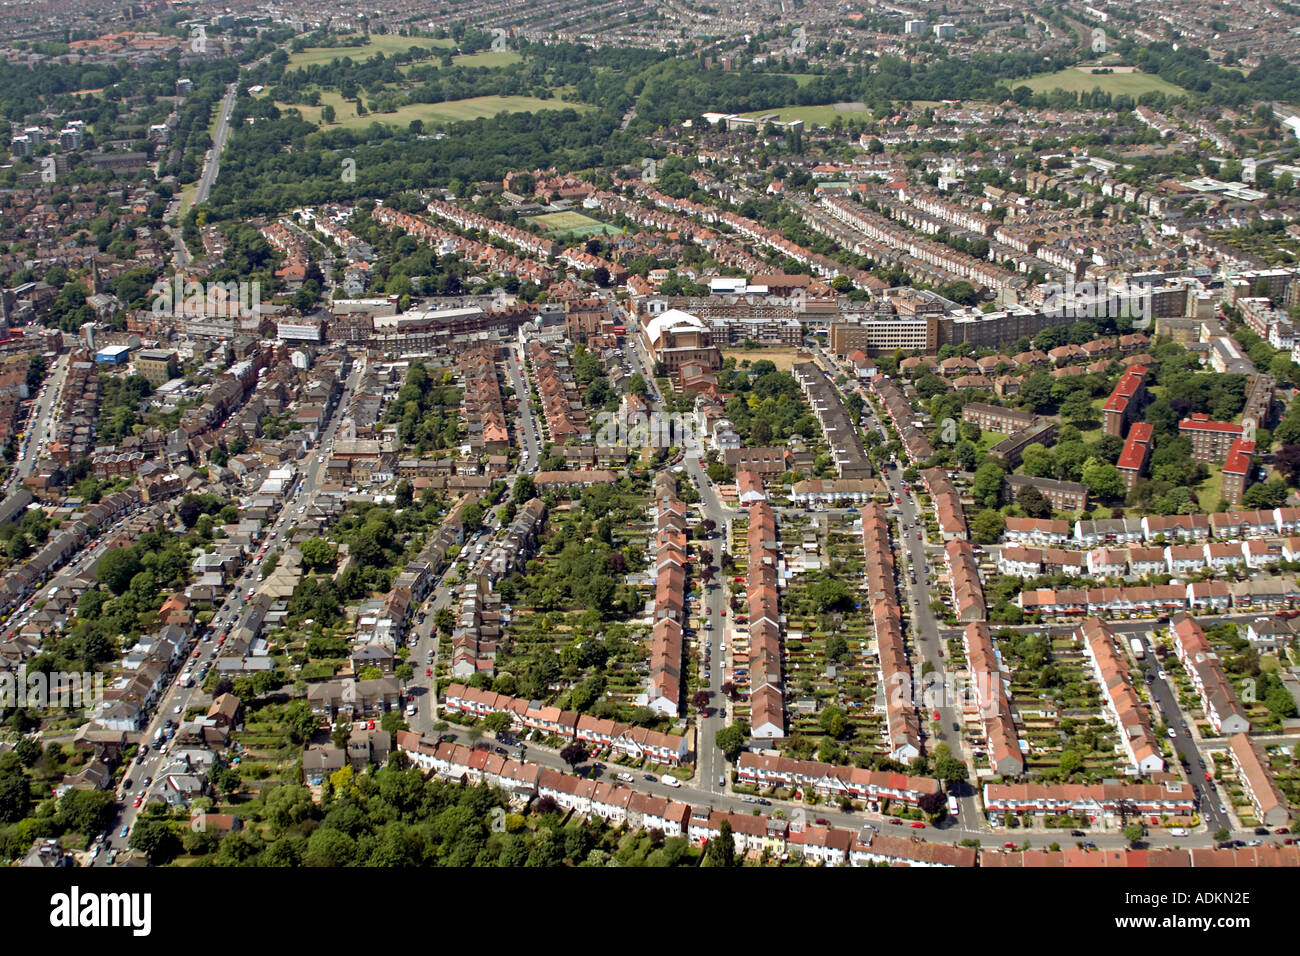 Obliqua di elevato livello vista aerea ovest di Streatham a Tooting Common London SE27 SW17 Inghilterra 2005 Foto Stock